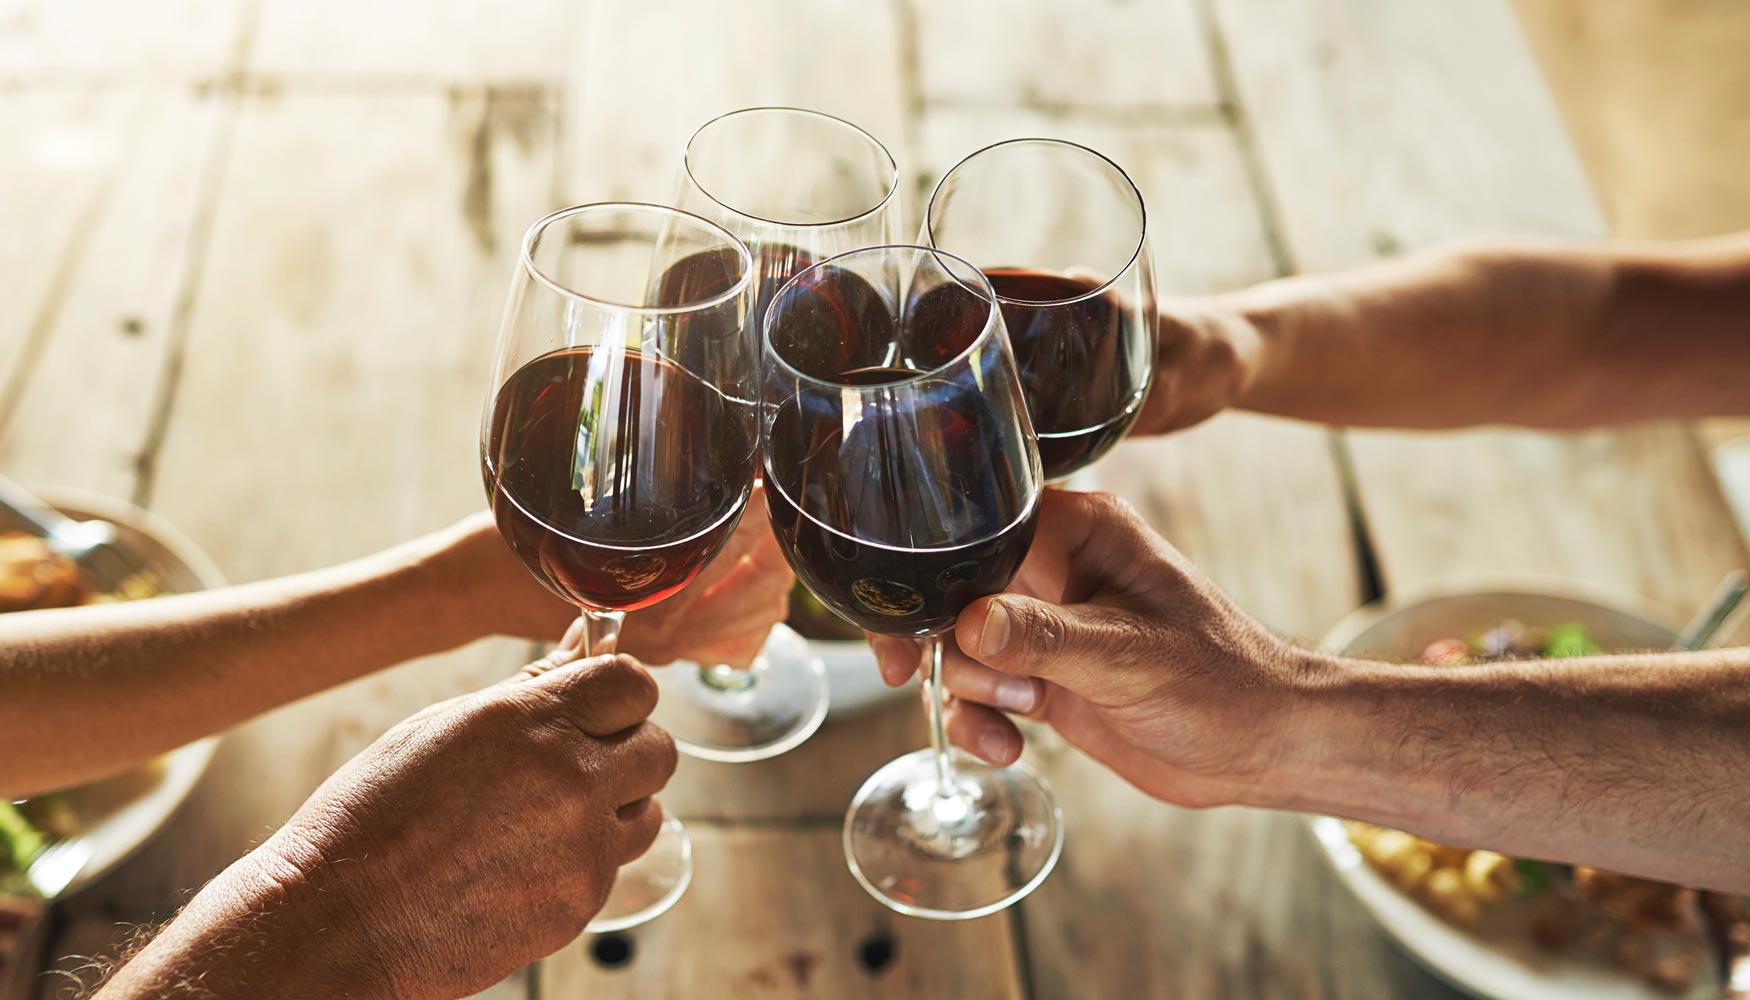 Los vinos tranquilos con DOP y los vinos con IGP han aumentado su consumo fuera y dentro del hogar